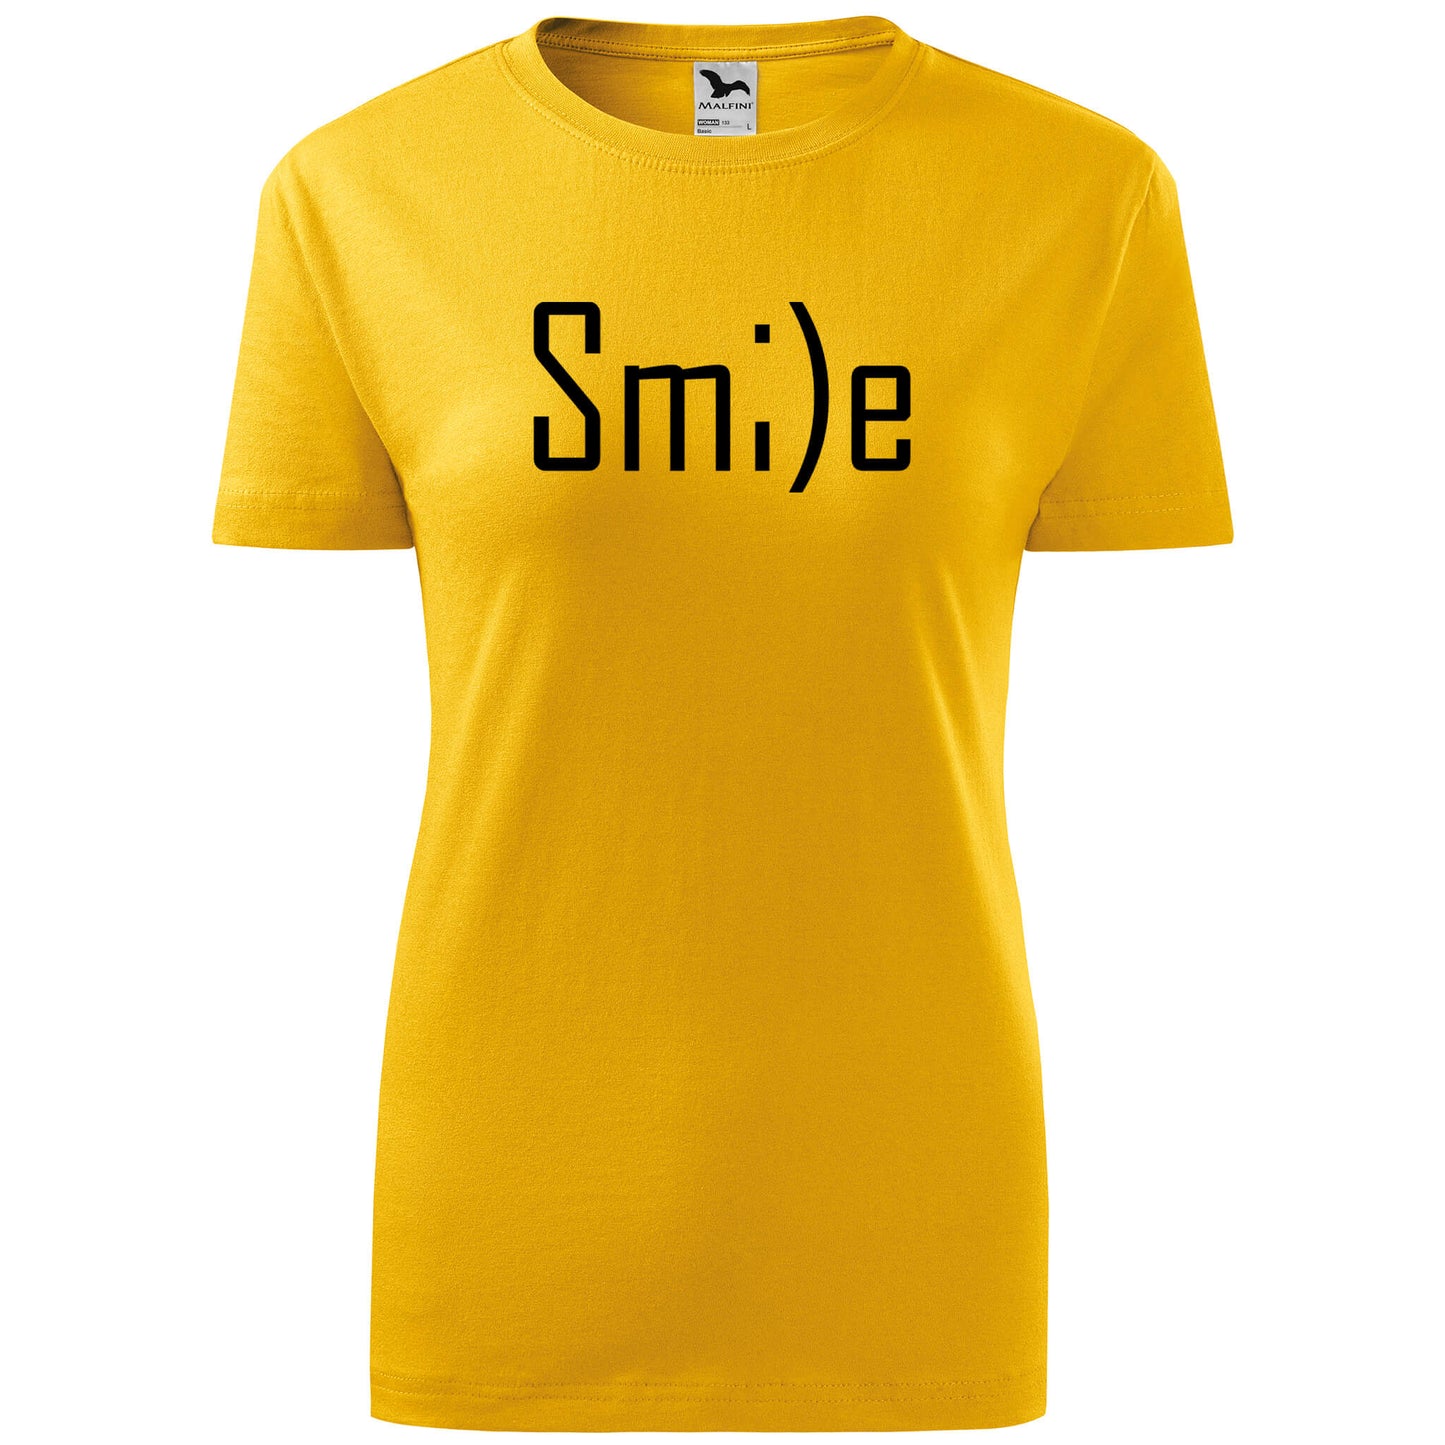 T-shirt - Smile - rvdesignprint